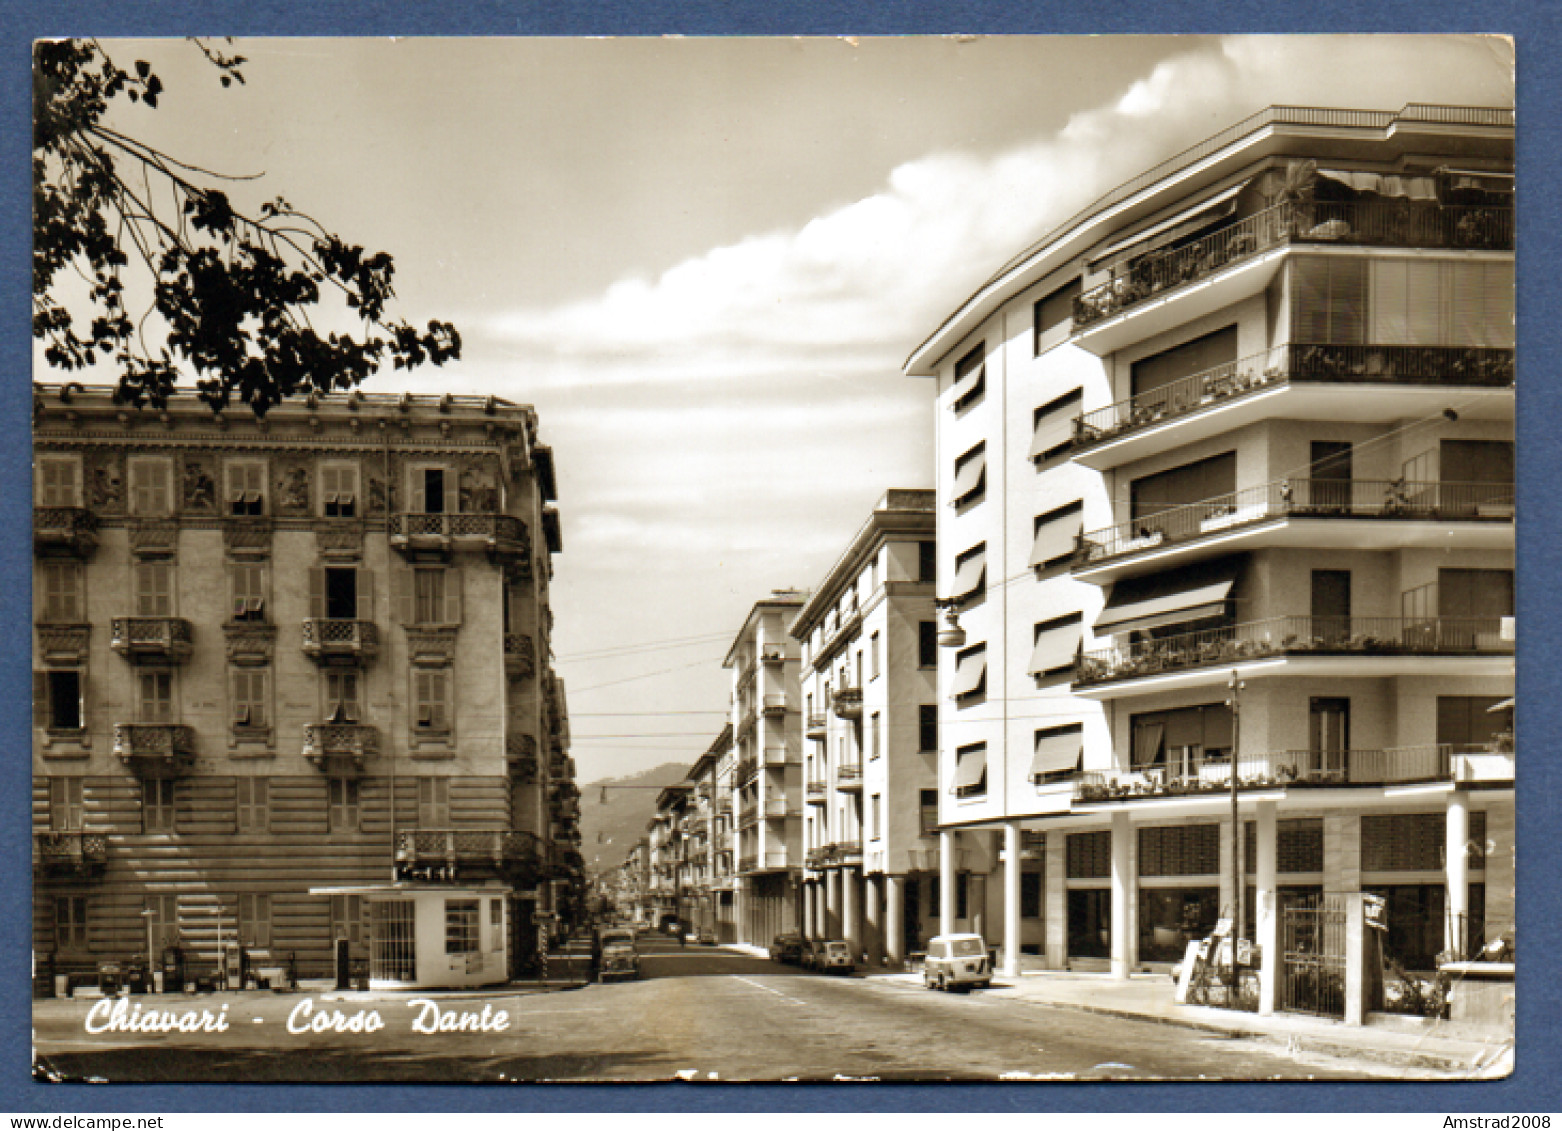 1964 - CHIAVARI - CORSO DANTE  -  ITALIE - Genova (Genoa)